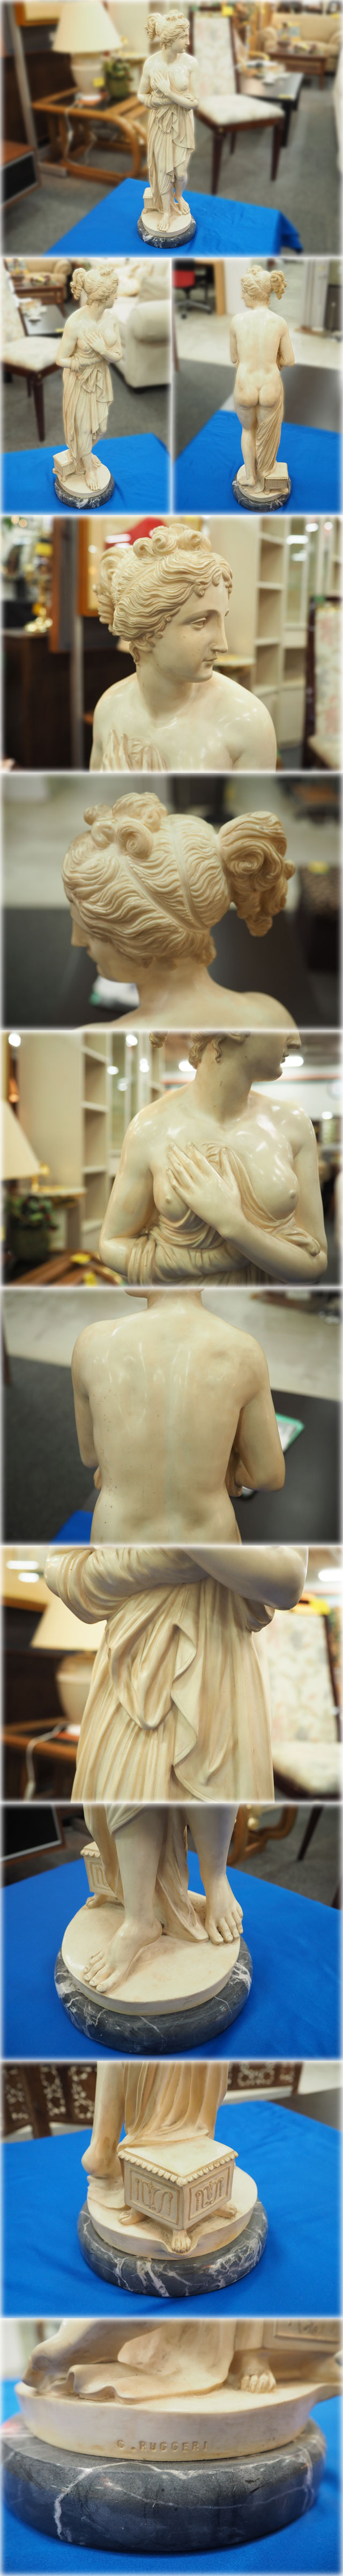 排気筒G.RUGGERI 大理石女性像 185x185x660mm 湯浴みする女性 裸婦像 ヴィーナス像 置物 オブジェ インテリア 西洋彫刻